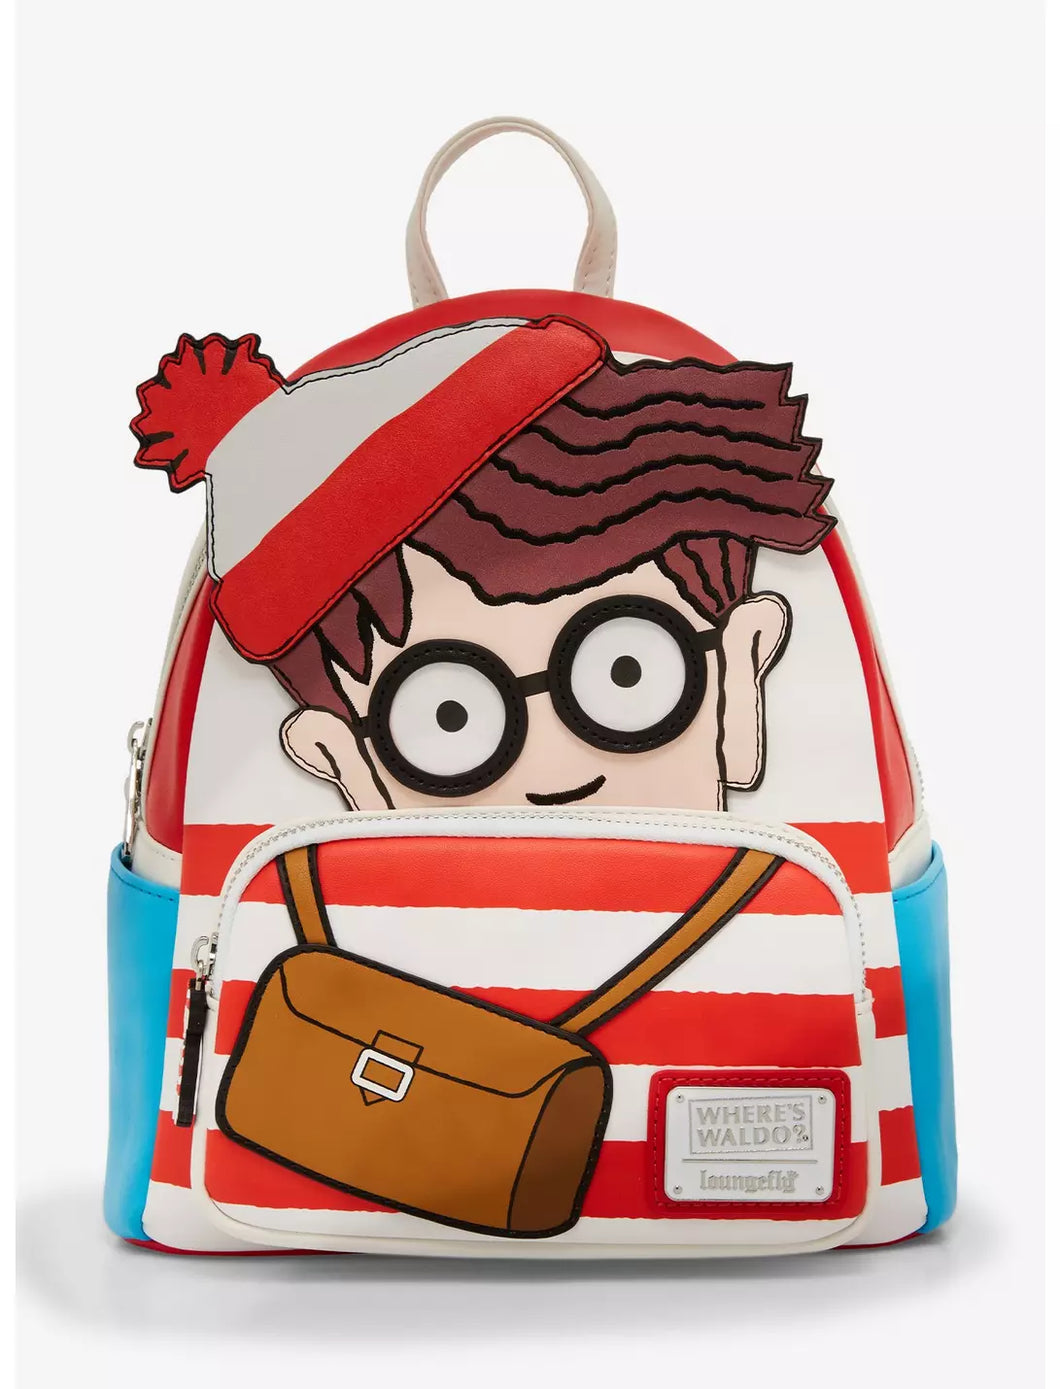 Where's Waldo Mini Backpack Cosplay Loungefly